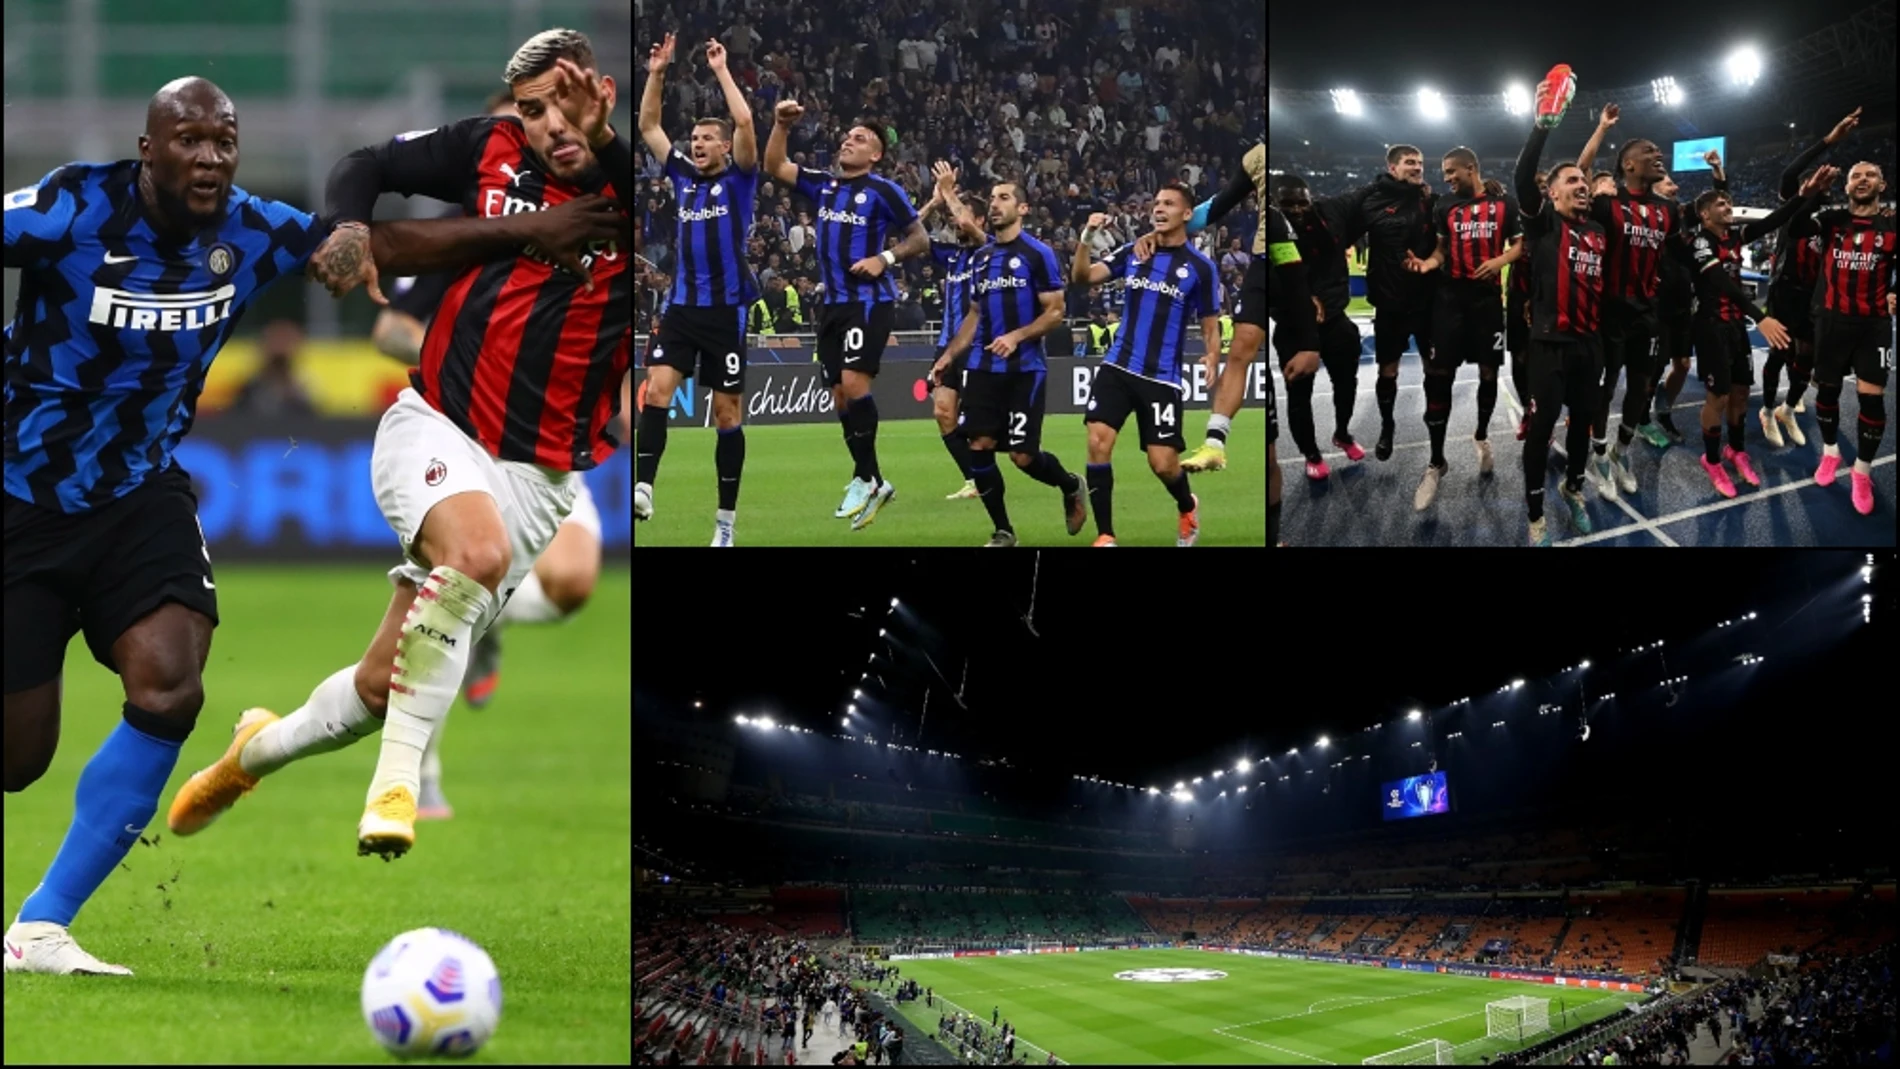 Milan-Inter: ¿San Siro o Giuseppe Meaza?, ¿por qué se le llama Derby della Madonina?